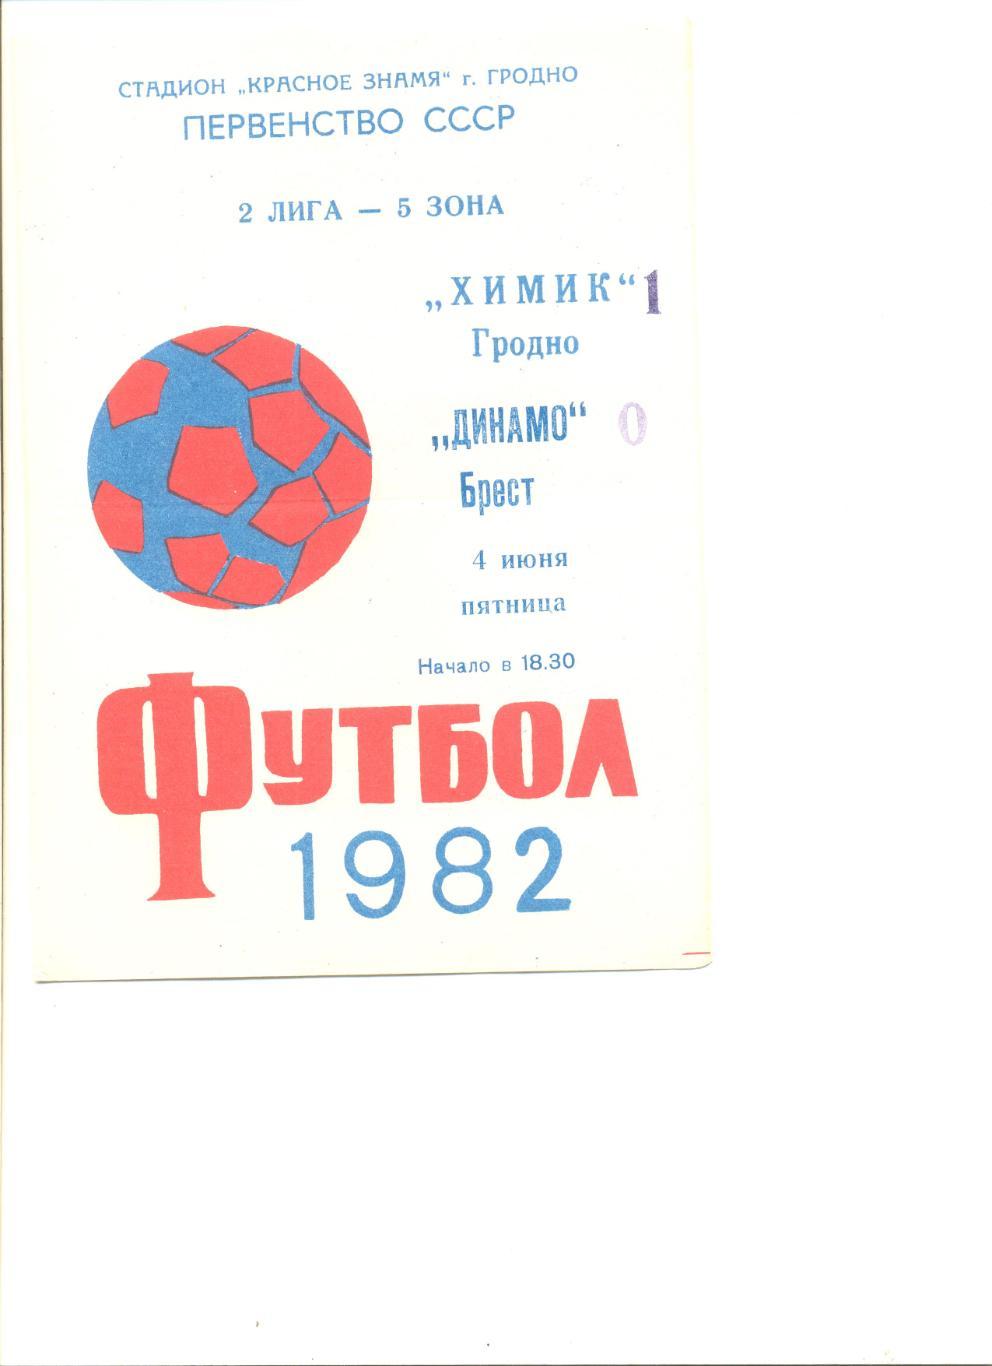 Химик Гродно - Динамо Брест 04.06.1982 г.